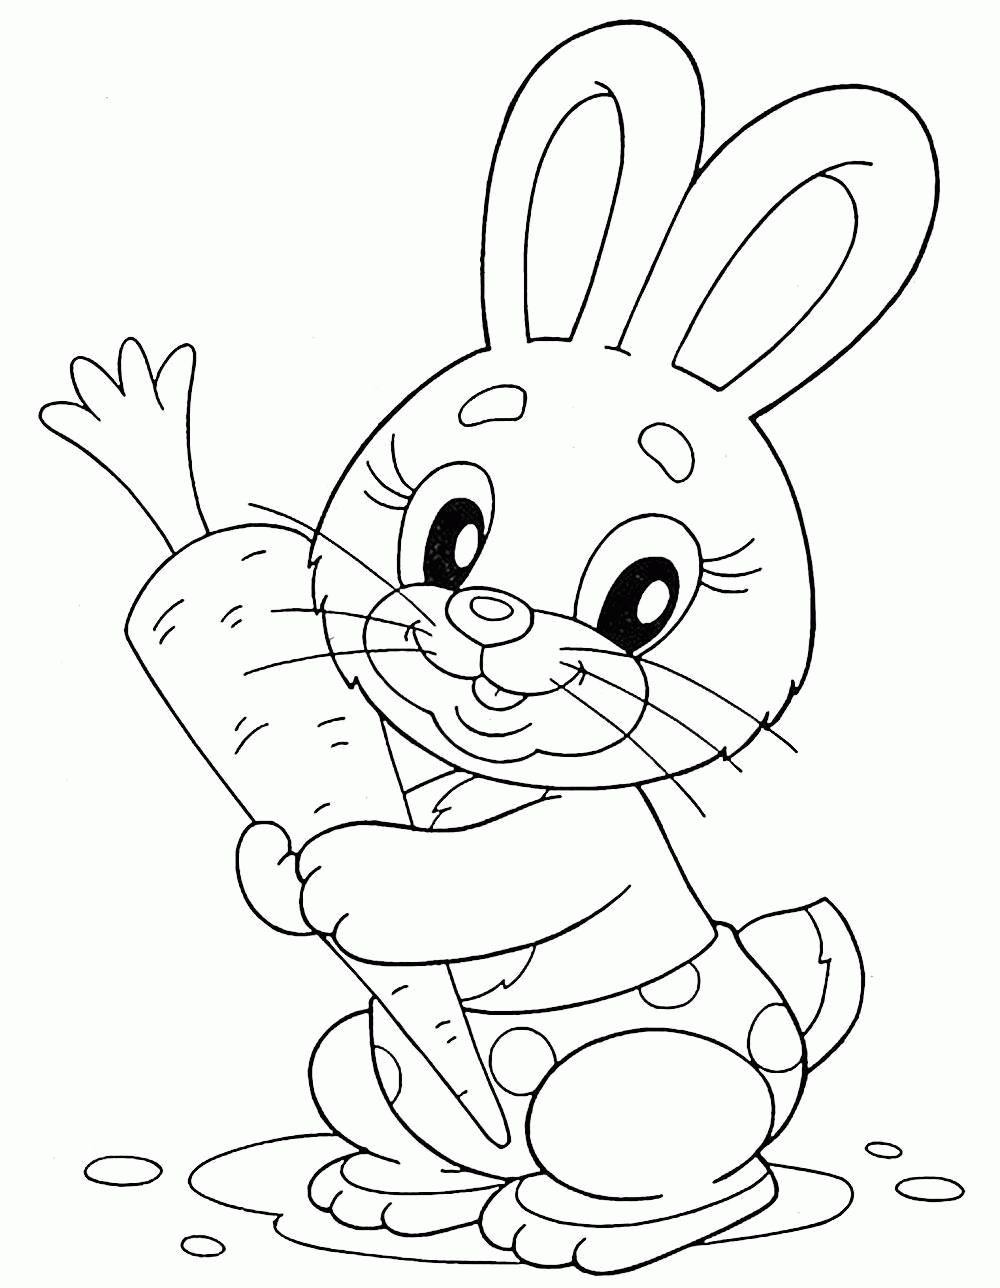 Название: Раскраска Название: Раскраска Рисунок зайчика с морковкой. Категория: домашние животные. Теги: заяц, кролик.. Категория: . Теги: .